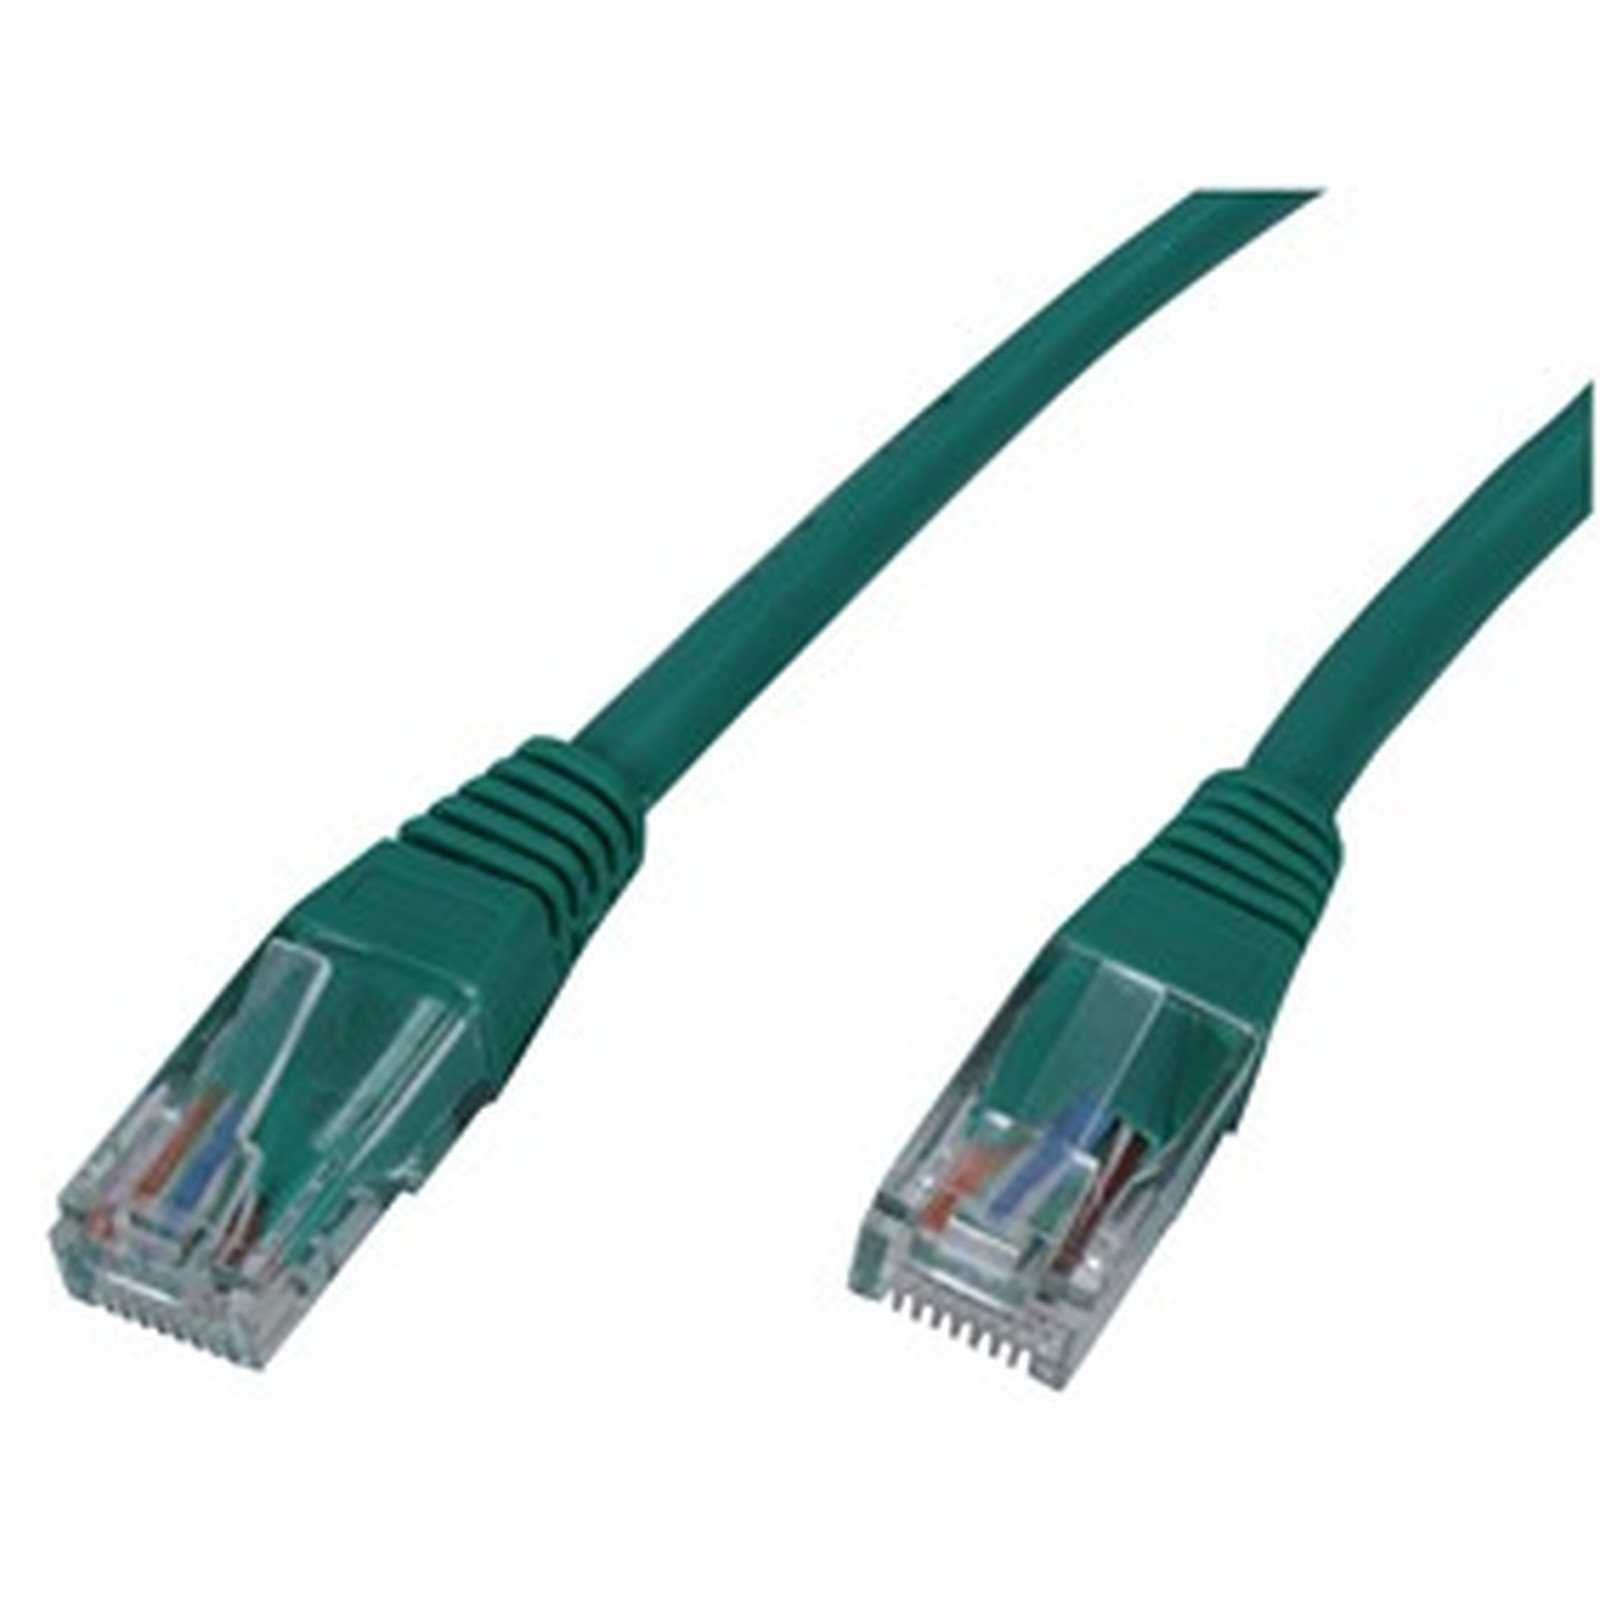 Cable RJ45 categorie 5e U/UTP 0.5 m (Vert) - Cable RJ45 Generique